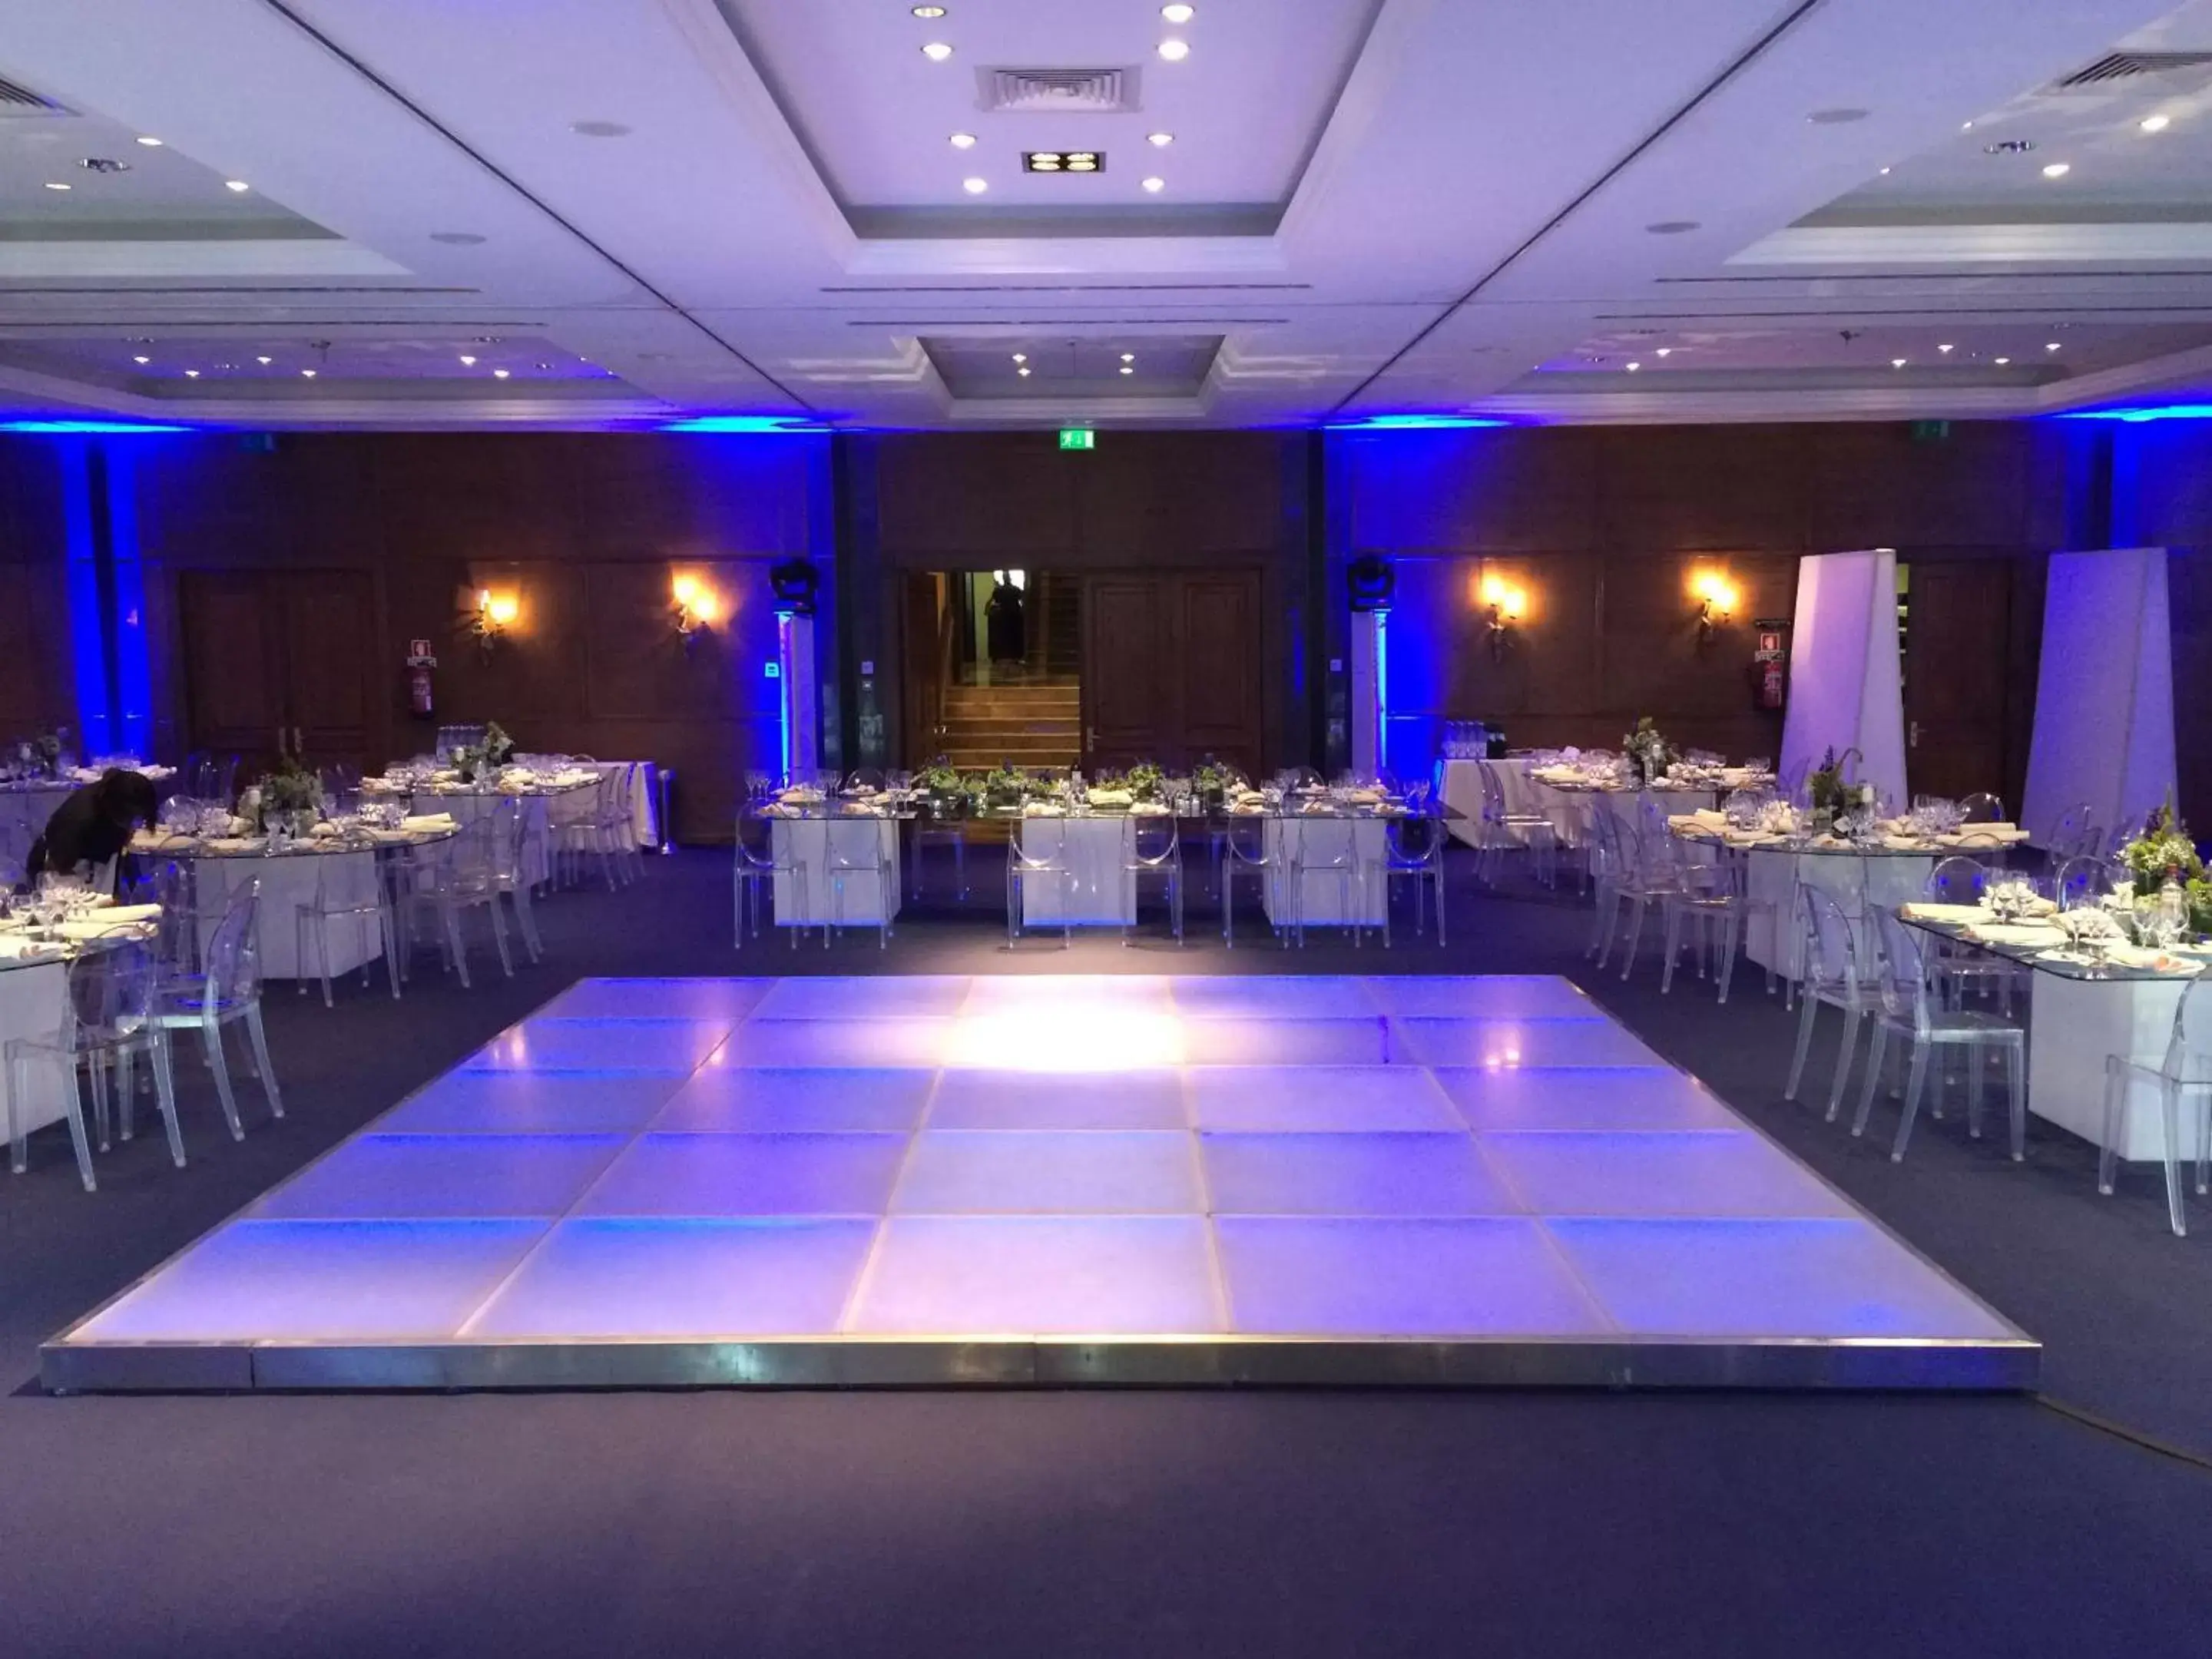 Banquet/Function facilities in Grande Real Villa Itália Hotel & Spa